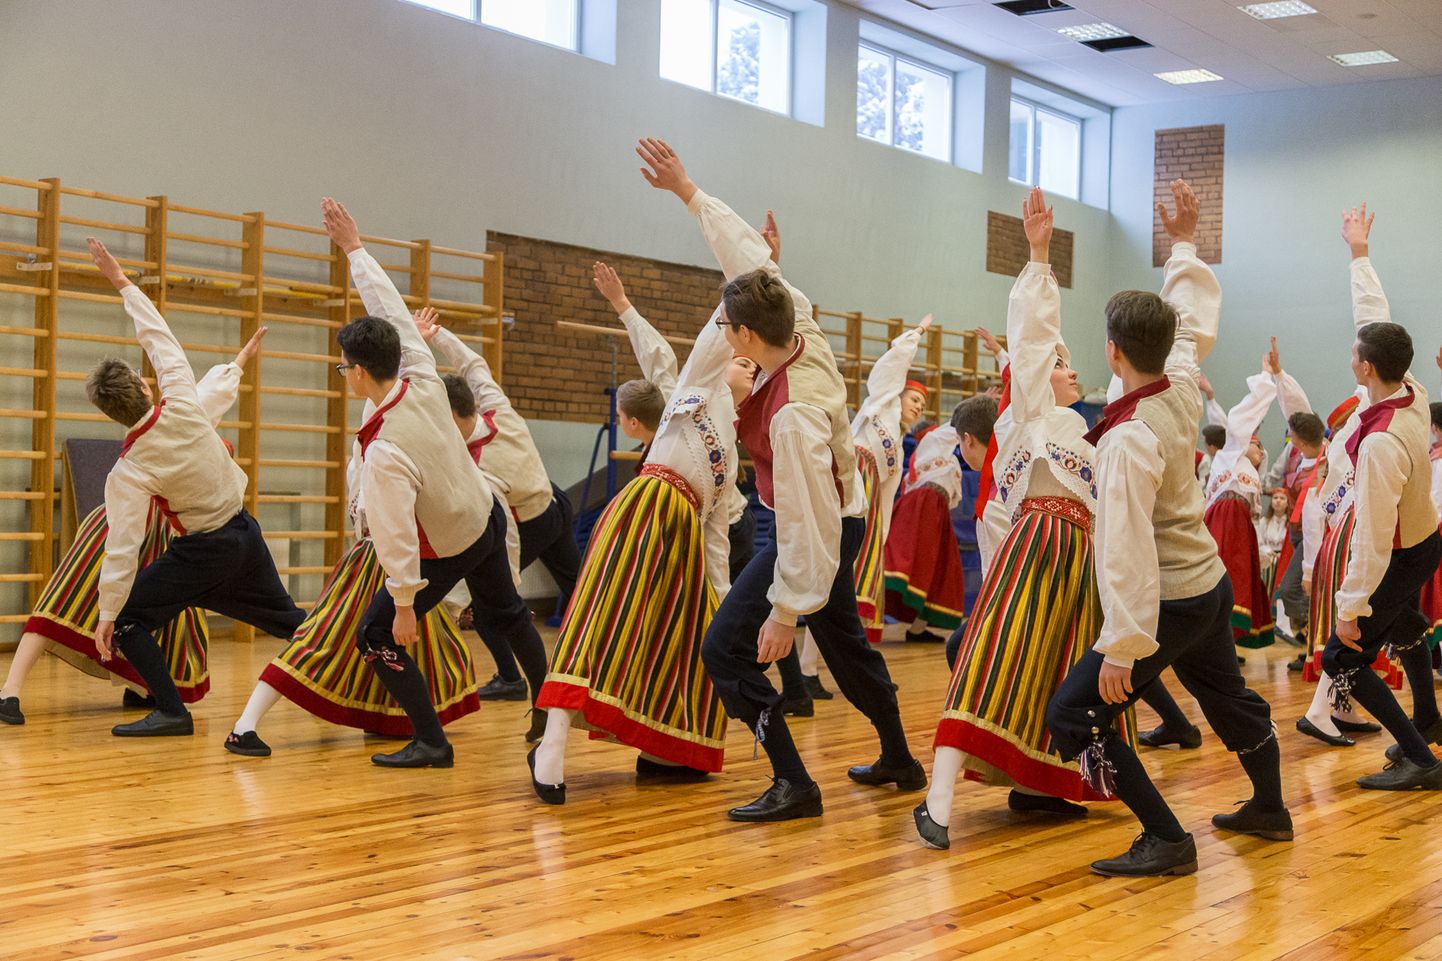 Среди прочих увлечений, с субботы в Ида-Вирумаа будут приостановлены и занятия в кружках народного танца.